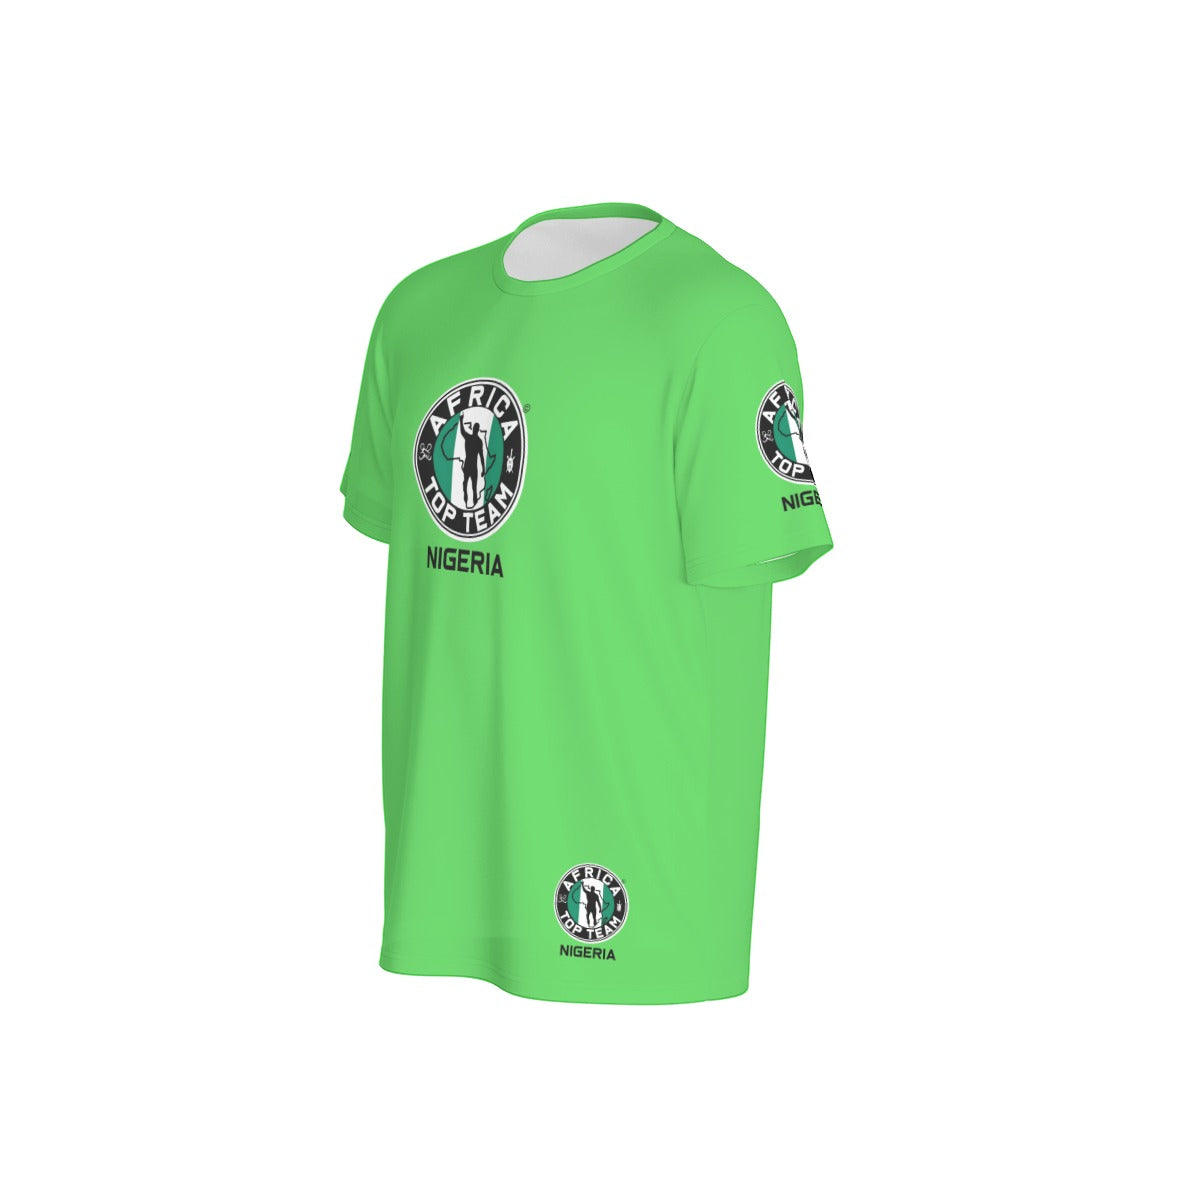 Africa Top Team Nigeria Green T-Shirt